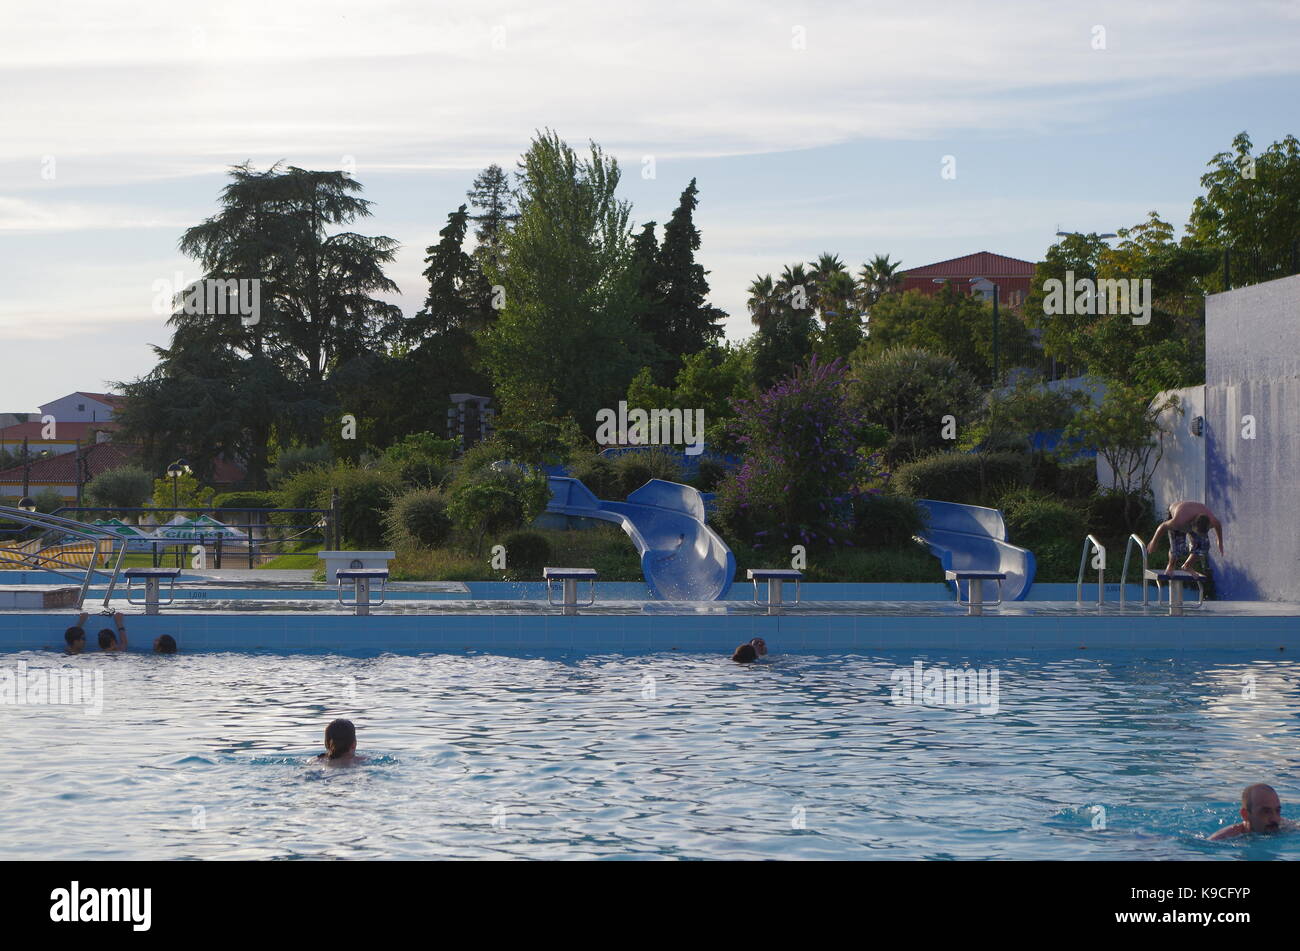 (Piscinas piscinas municipais) Castelo de Vide, Algarve, Portugal. Foto de stock